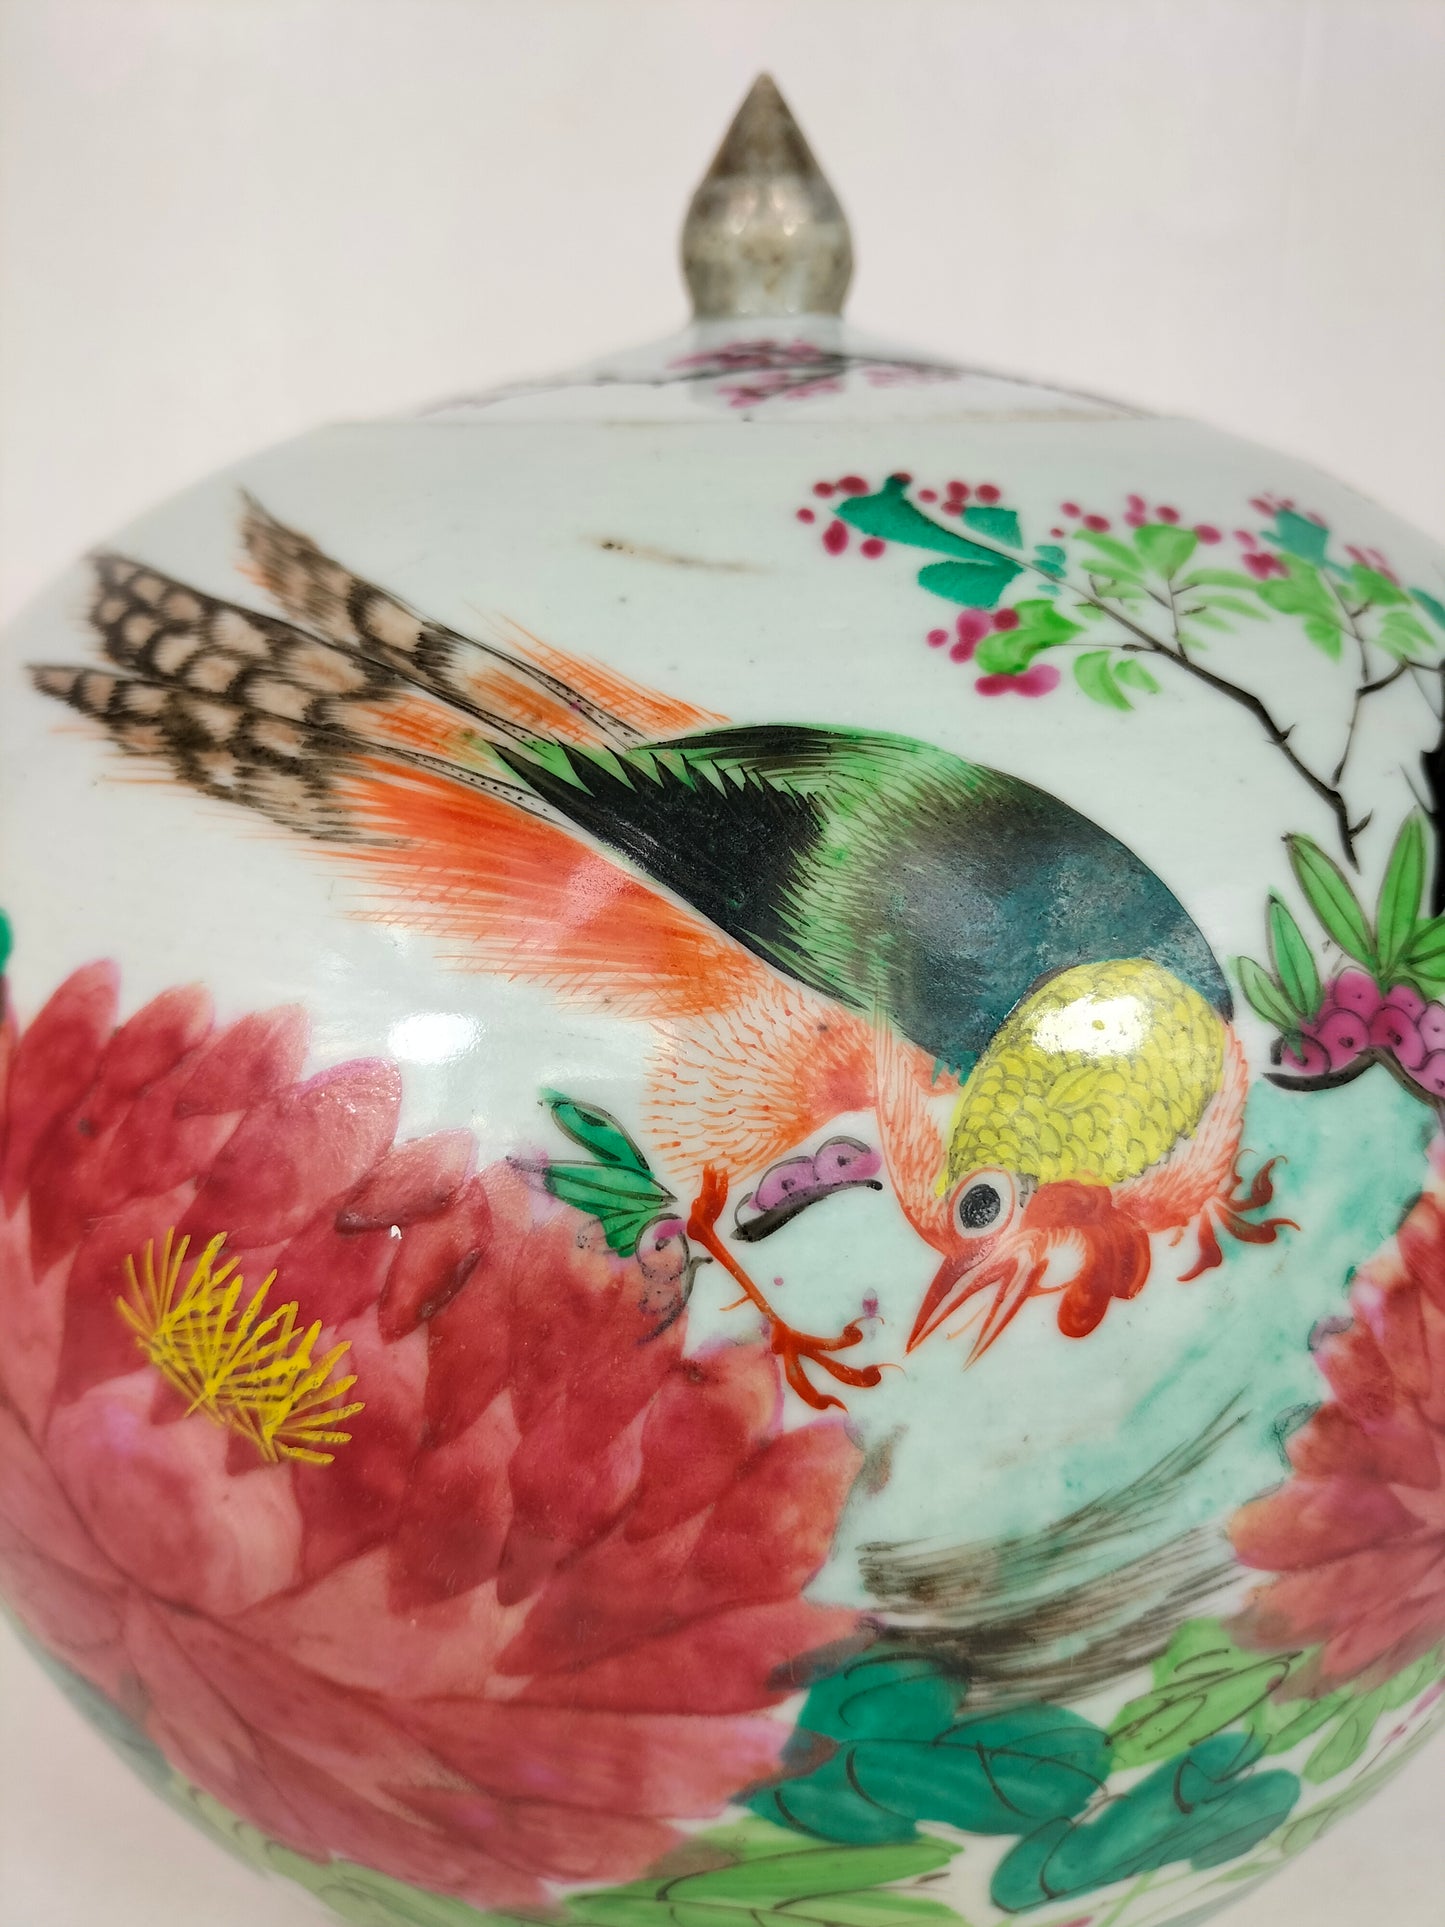 جرة زنجبيل تشيانجيانغ كاي الصينية العتيقة مزينة بطائر وزهور // عهد أسرة تشينغ - القرن التاسع عشر